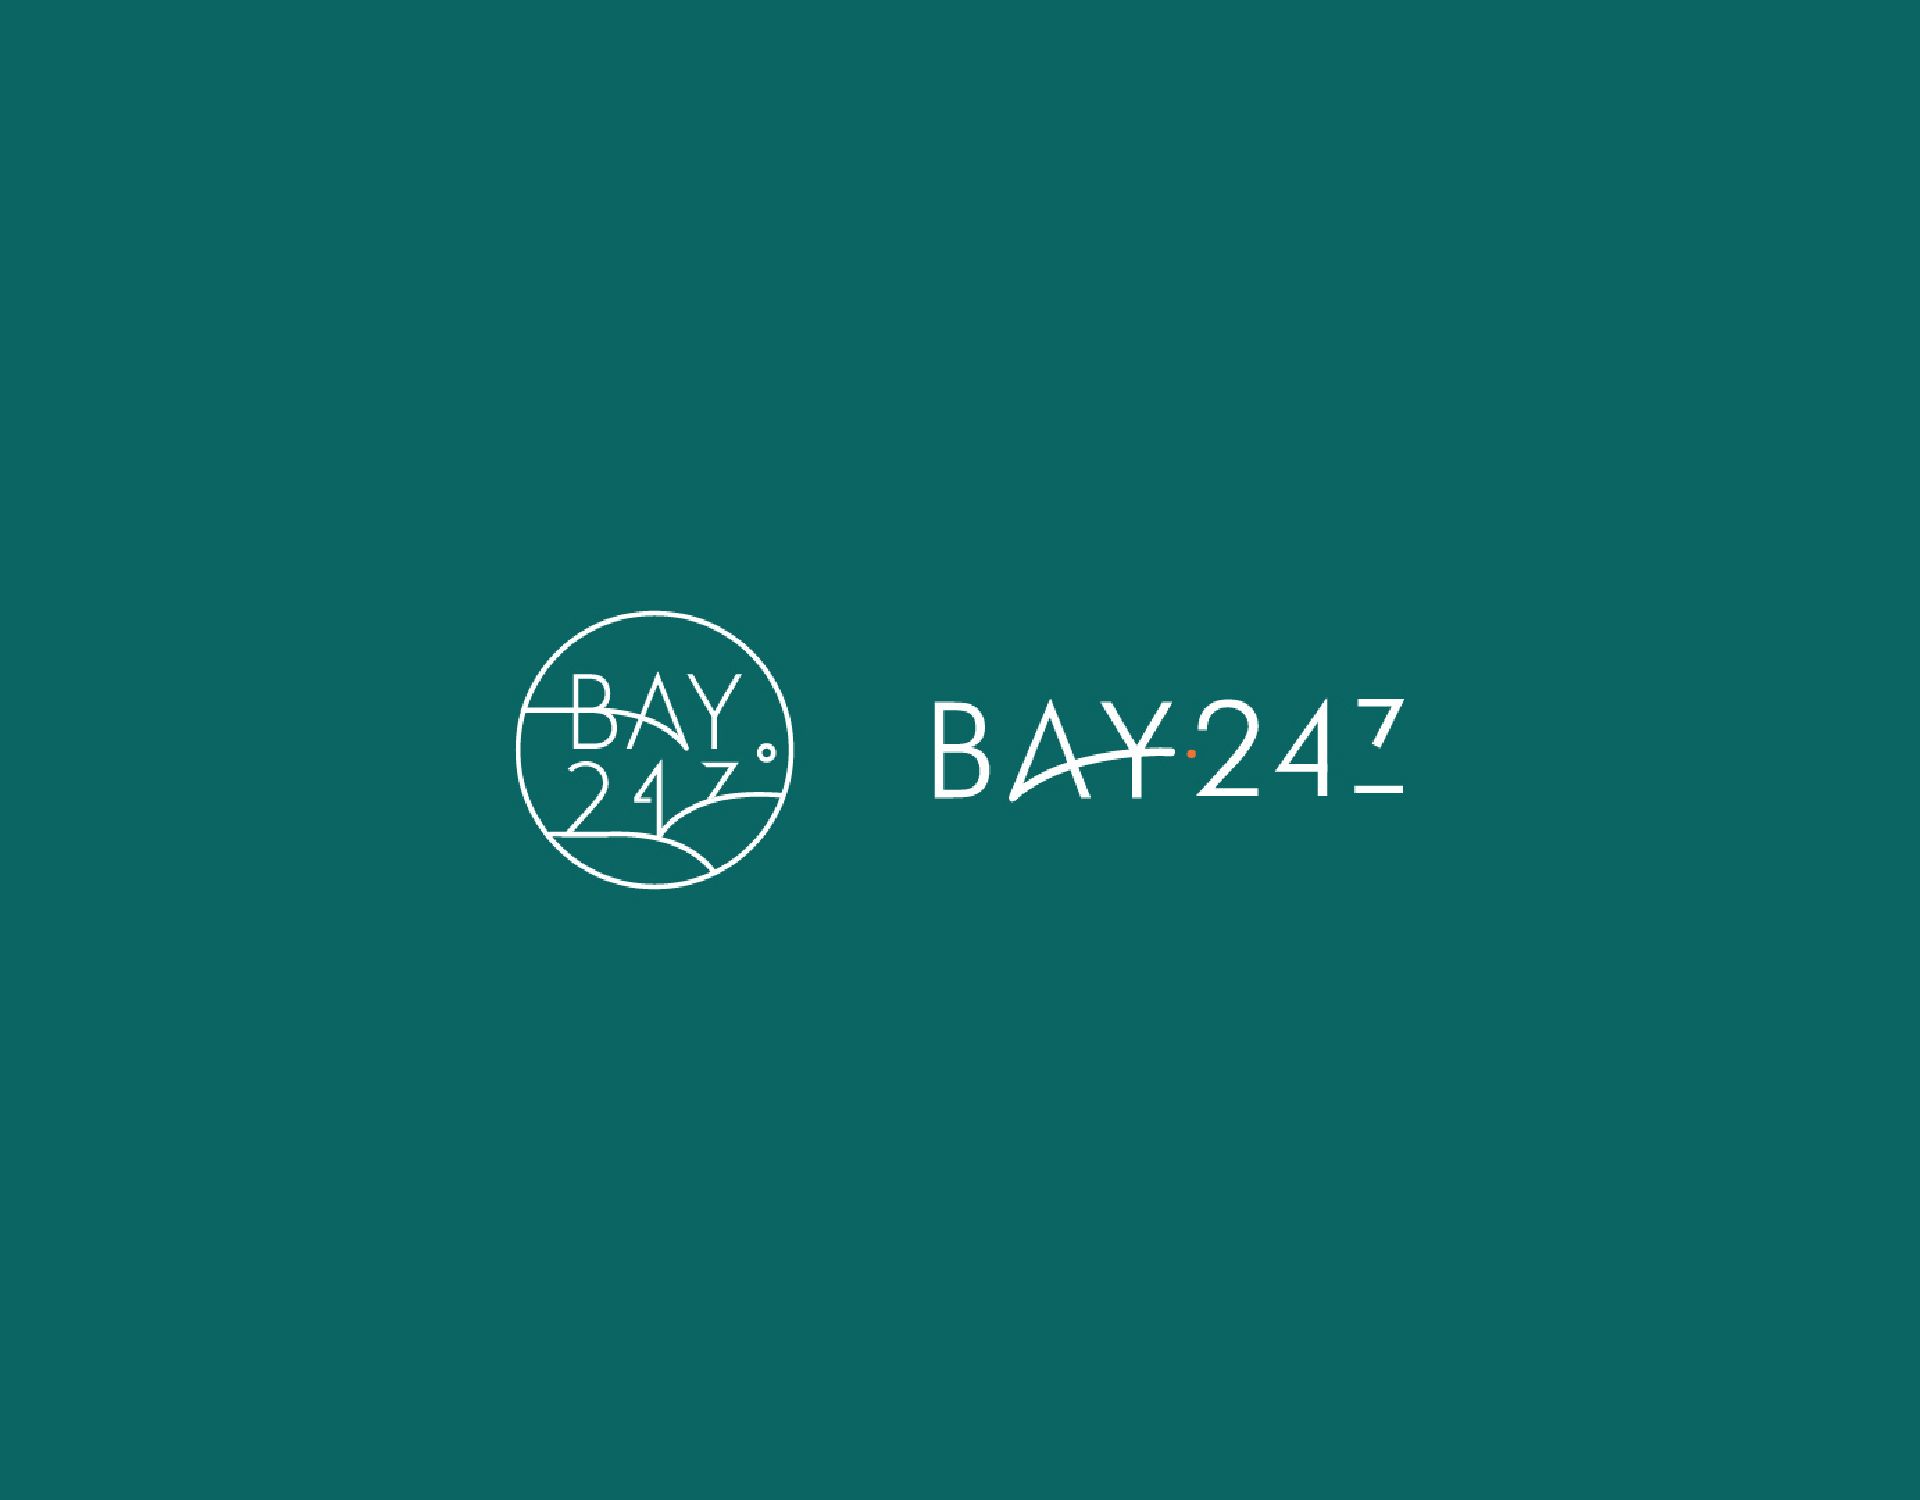 Bay 247